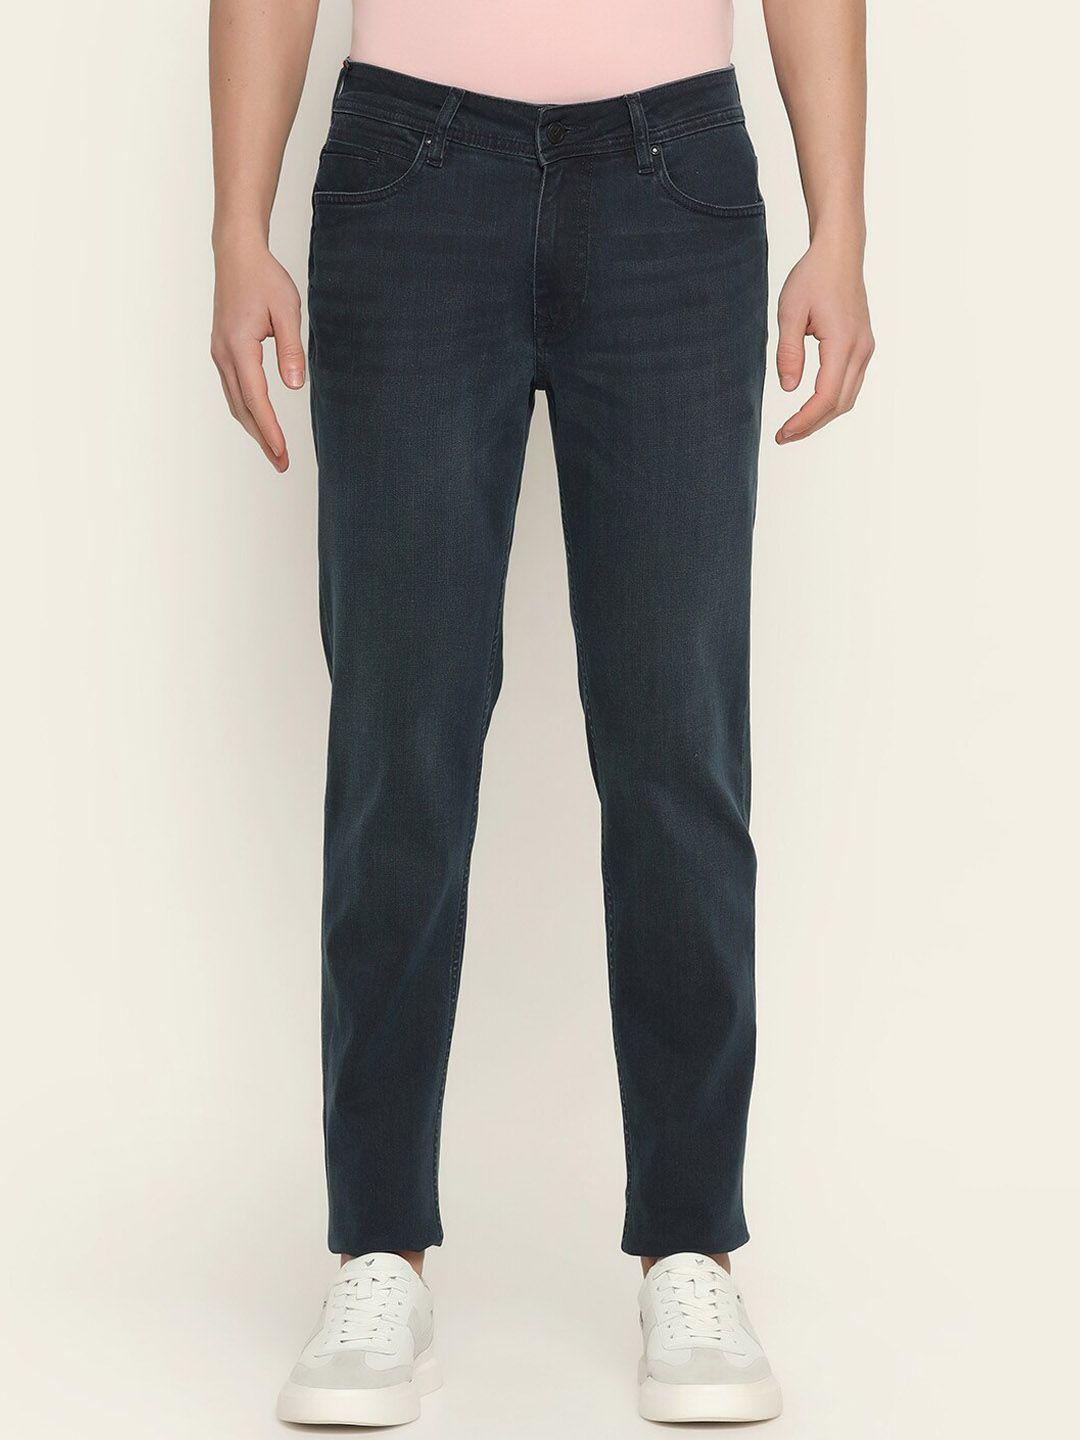 blackberrys-men-slim-fit-low-rise-jeans